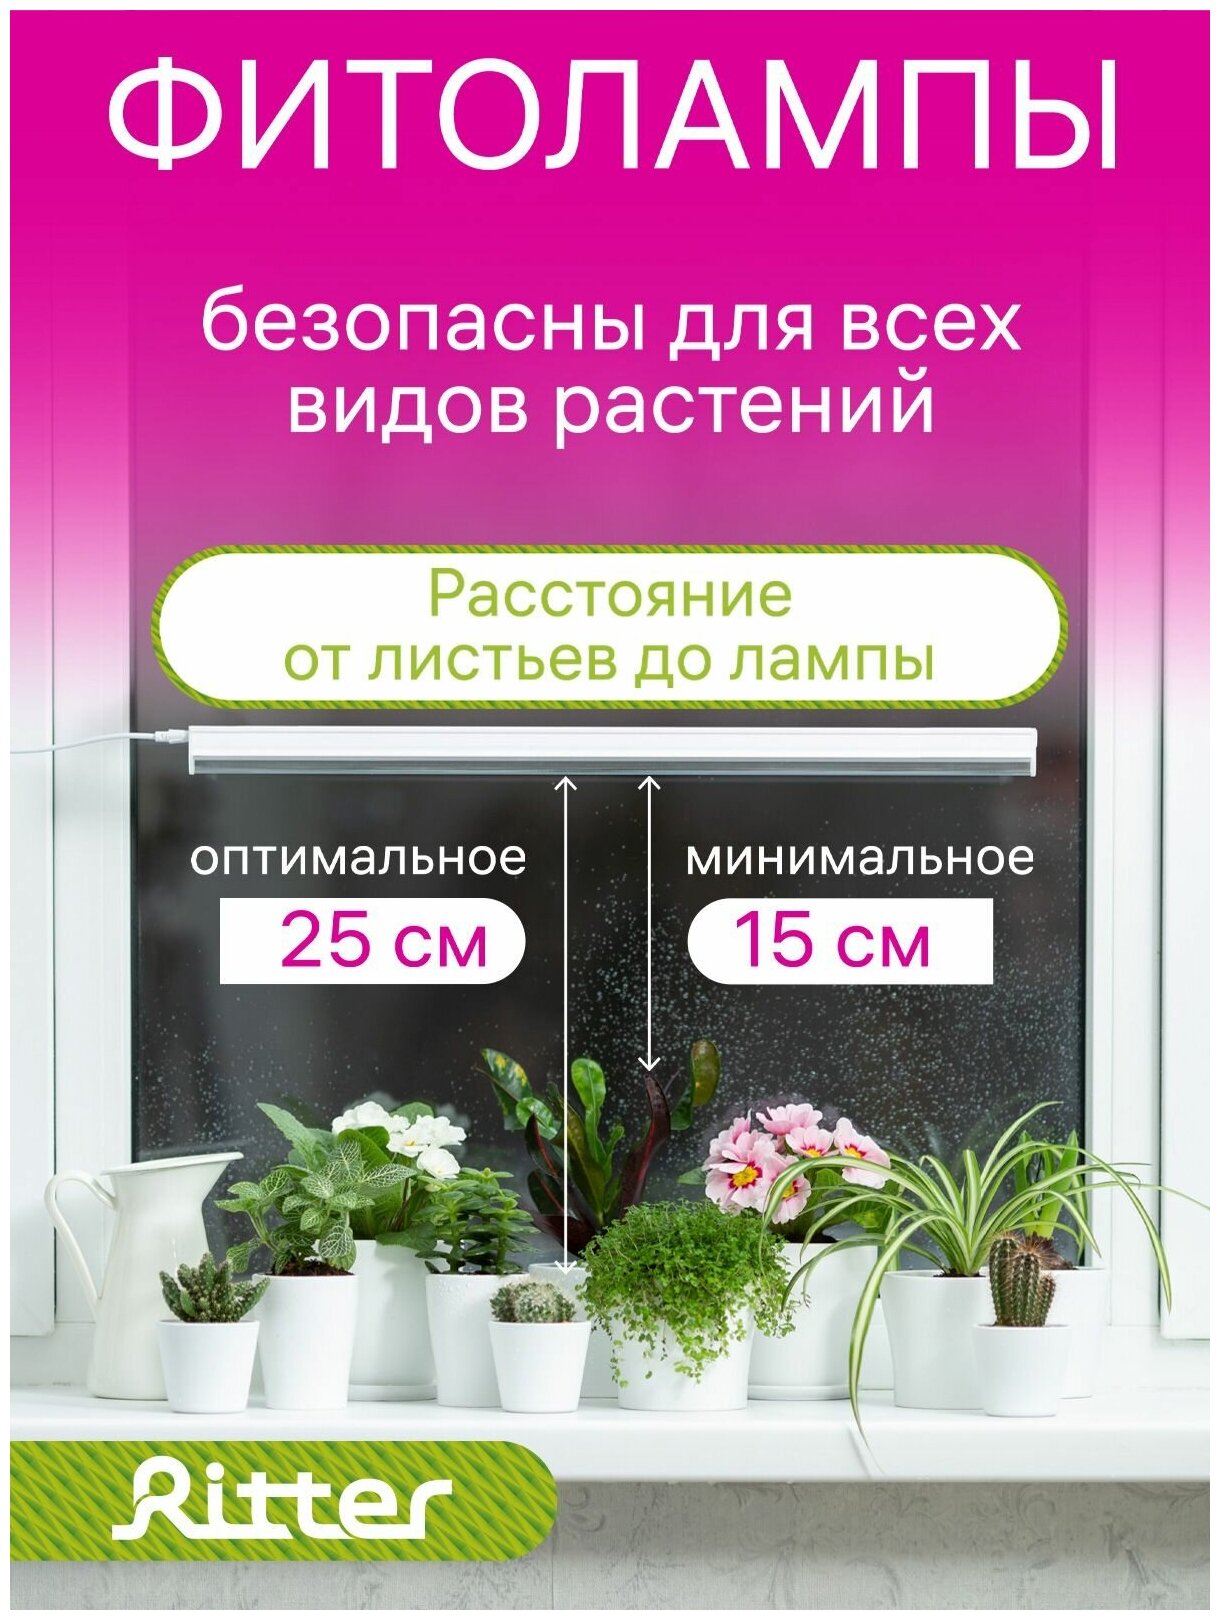 56296 2 Светильник для роста растений, светодиодный, Т5, 570x21x32мм, 10Вт, 13,5μmol/s, 4м², 56296 2, Ritter, цена за 1 шт.